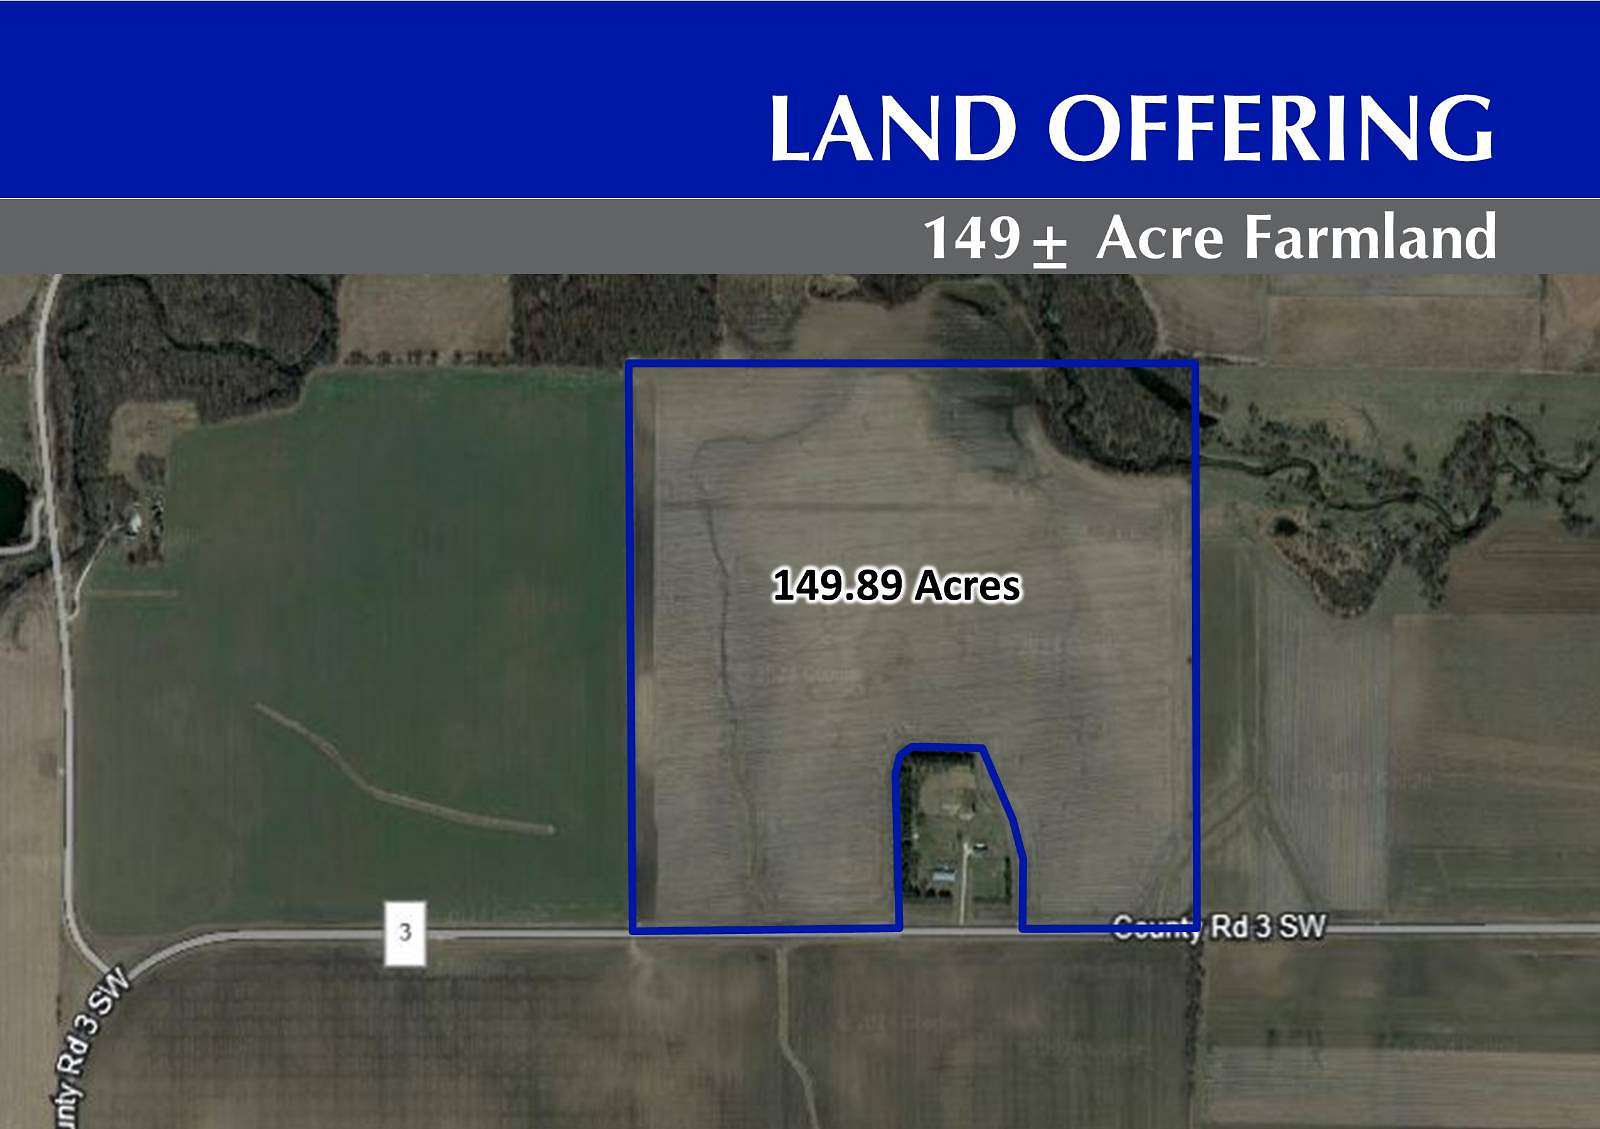 149.89 Acres of Agricultural Land for Sale in Stewartville, Minnesota